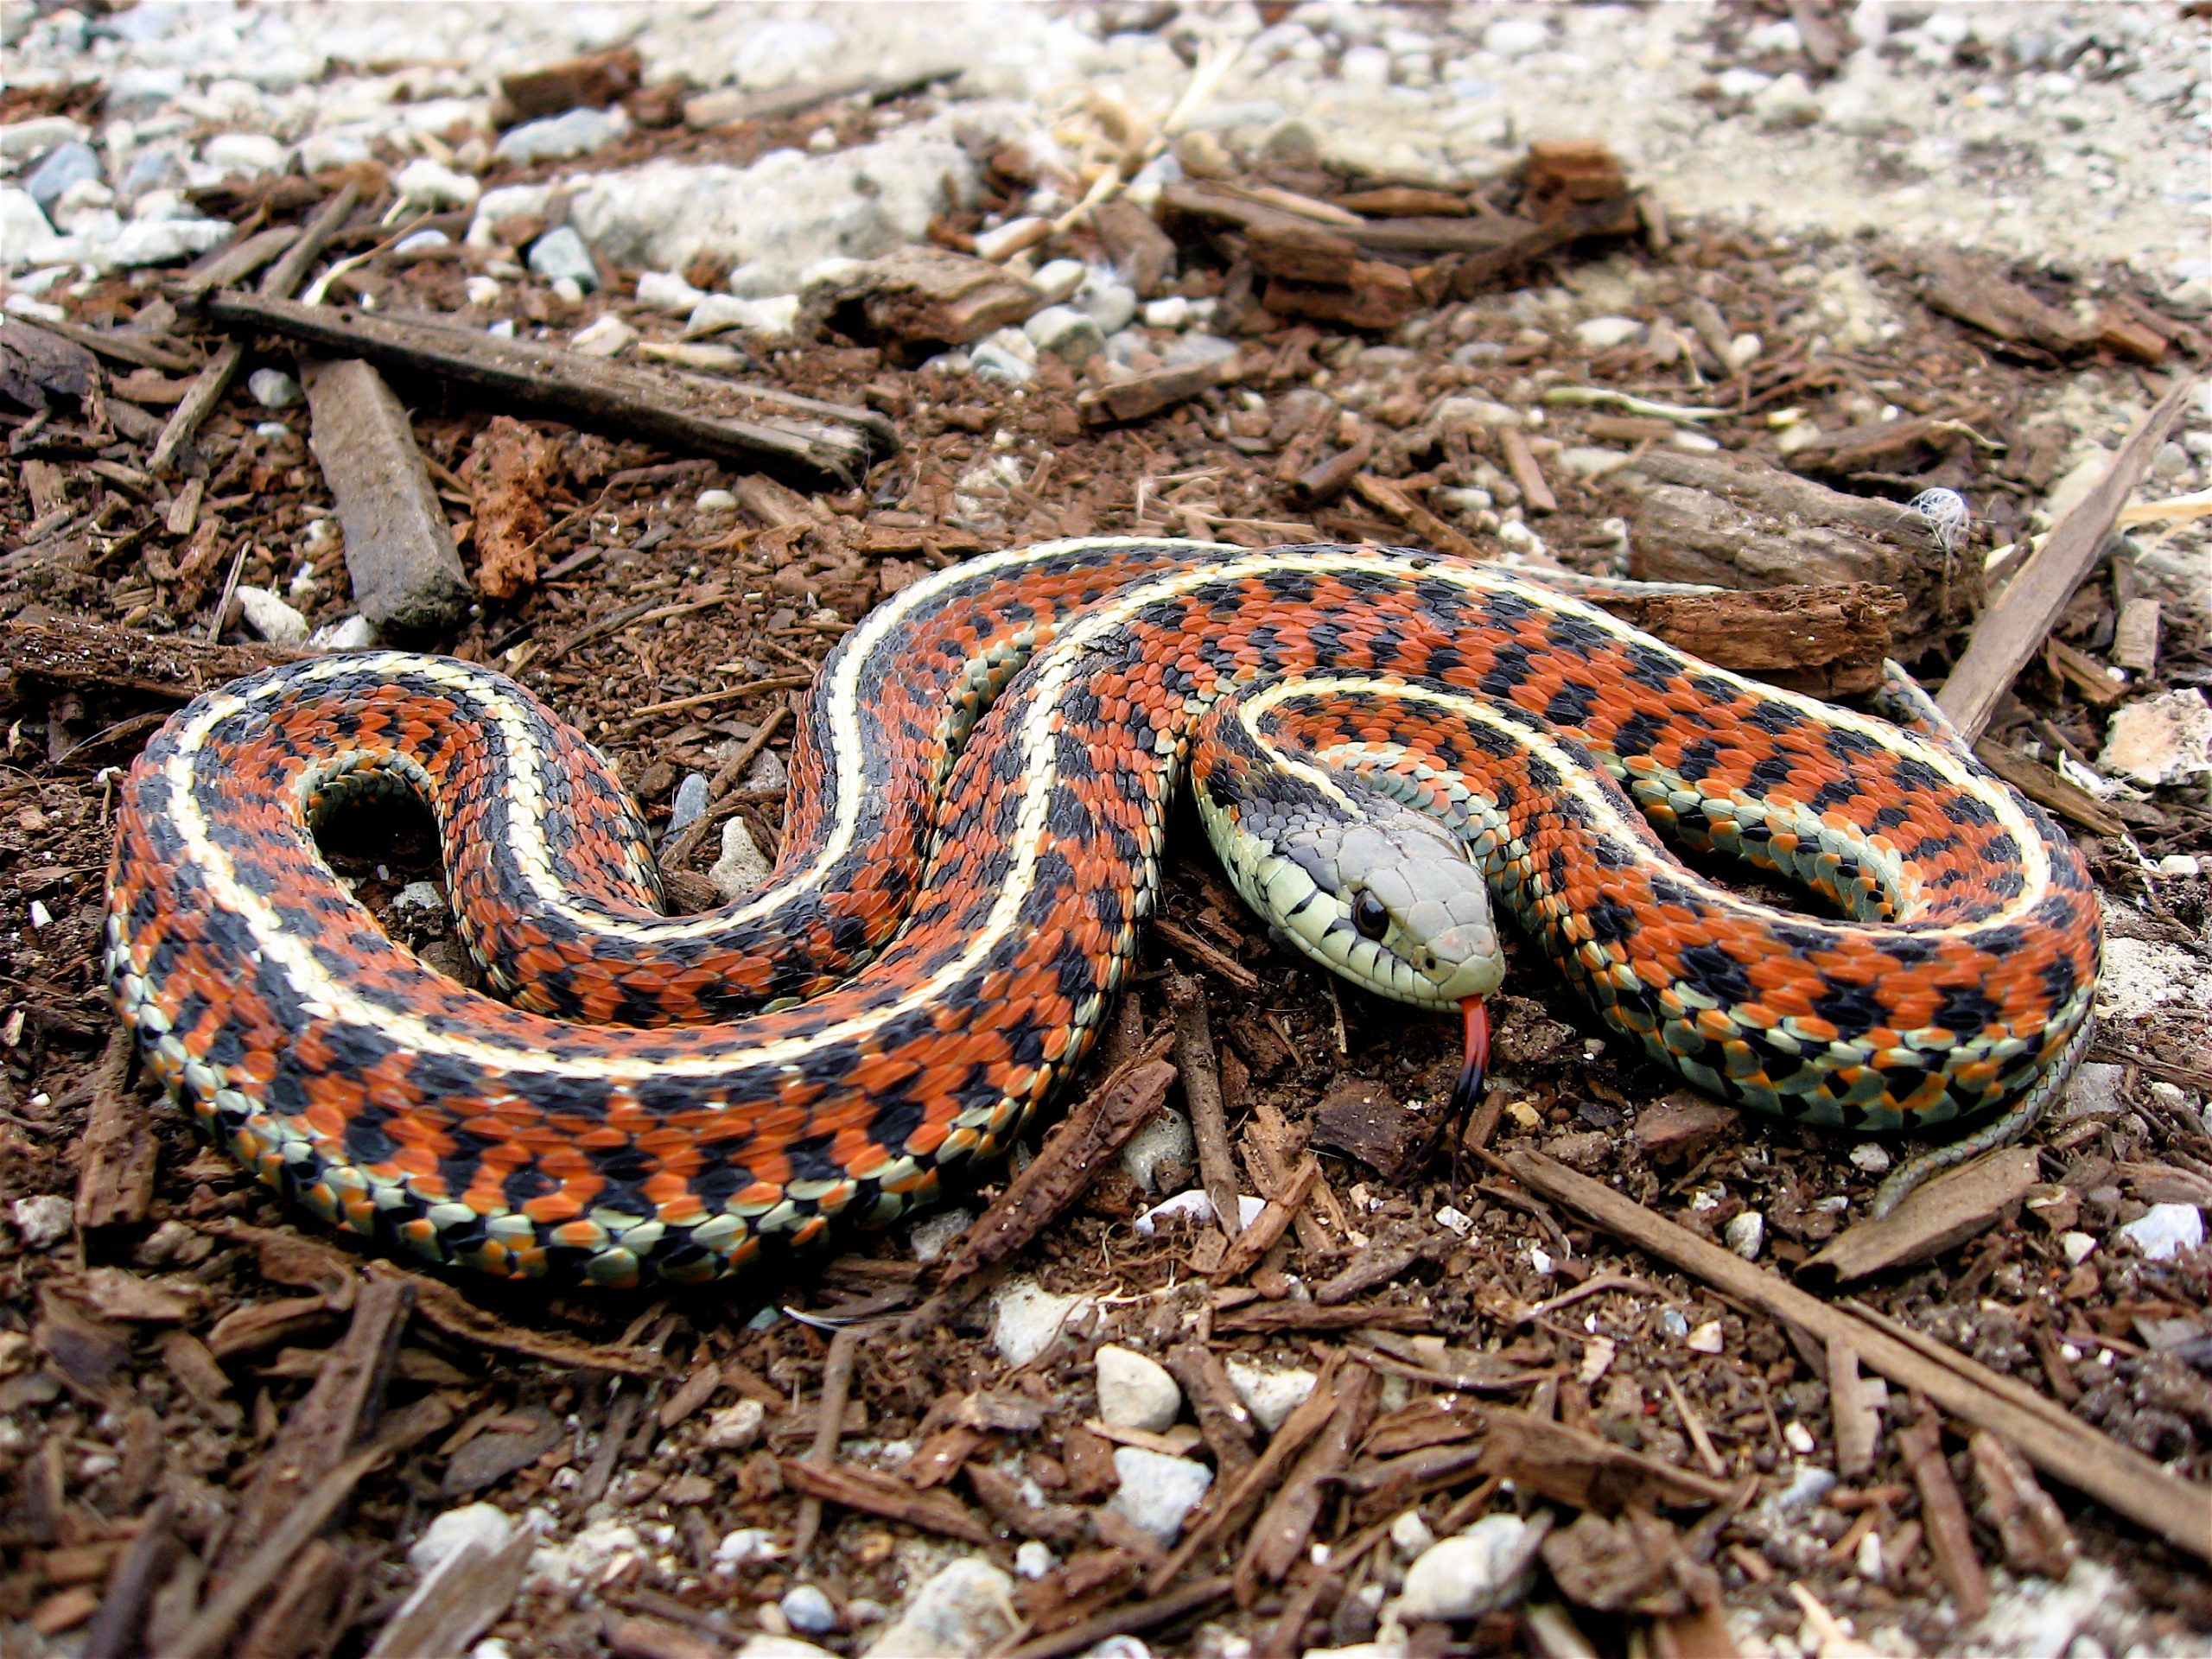 Ευρυτανία: Εμφανίστηκε γιγαντιαίο φίδι δίπλα σε σπίτια (φωτό)